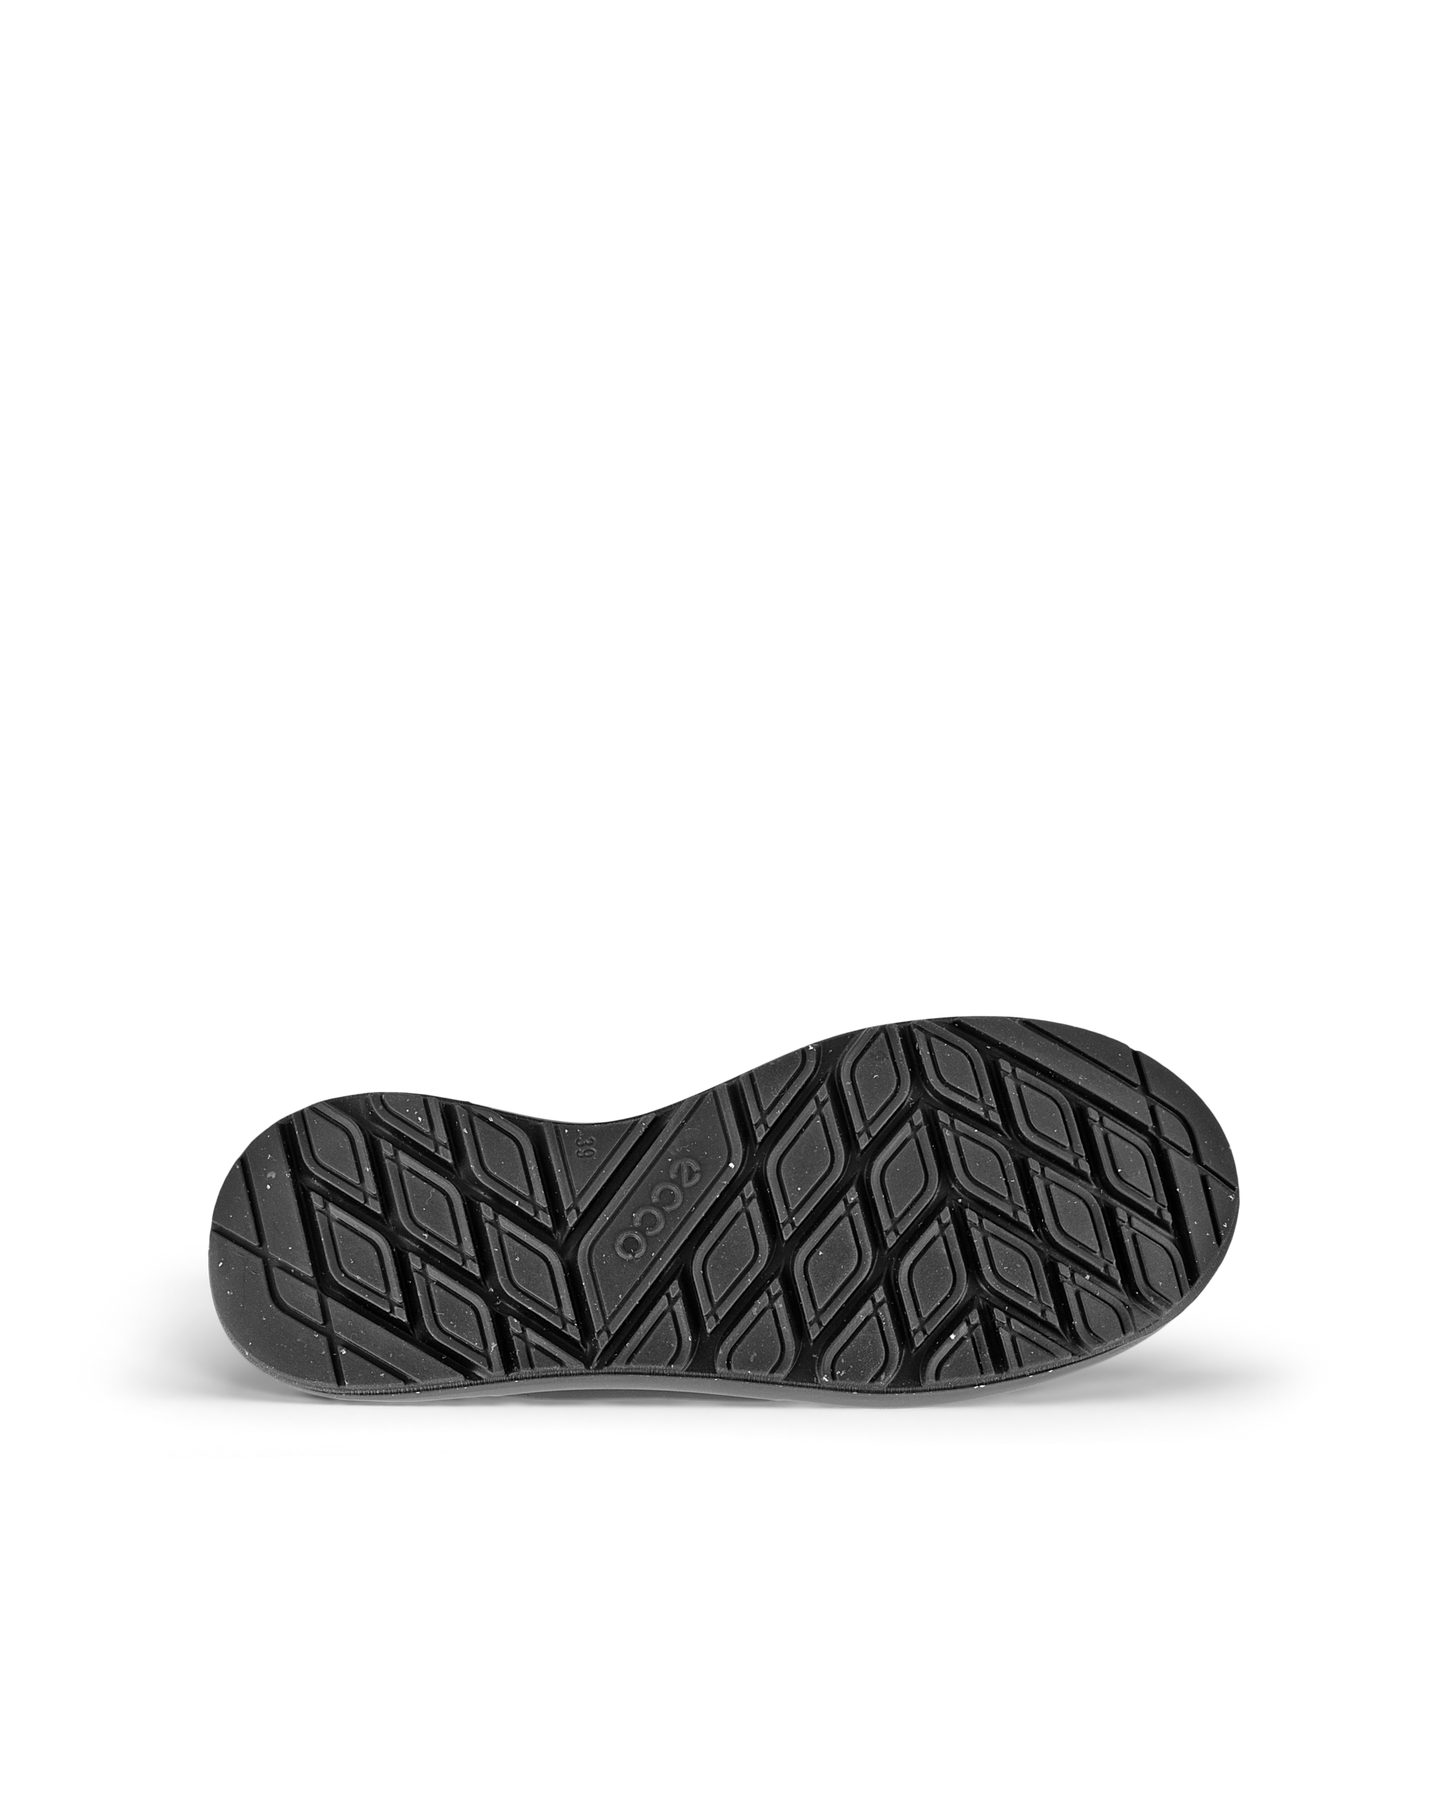 Ecco - Solice støvle m/primaloft, 52-0871 - Sort/grå